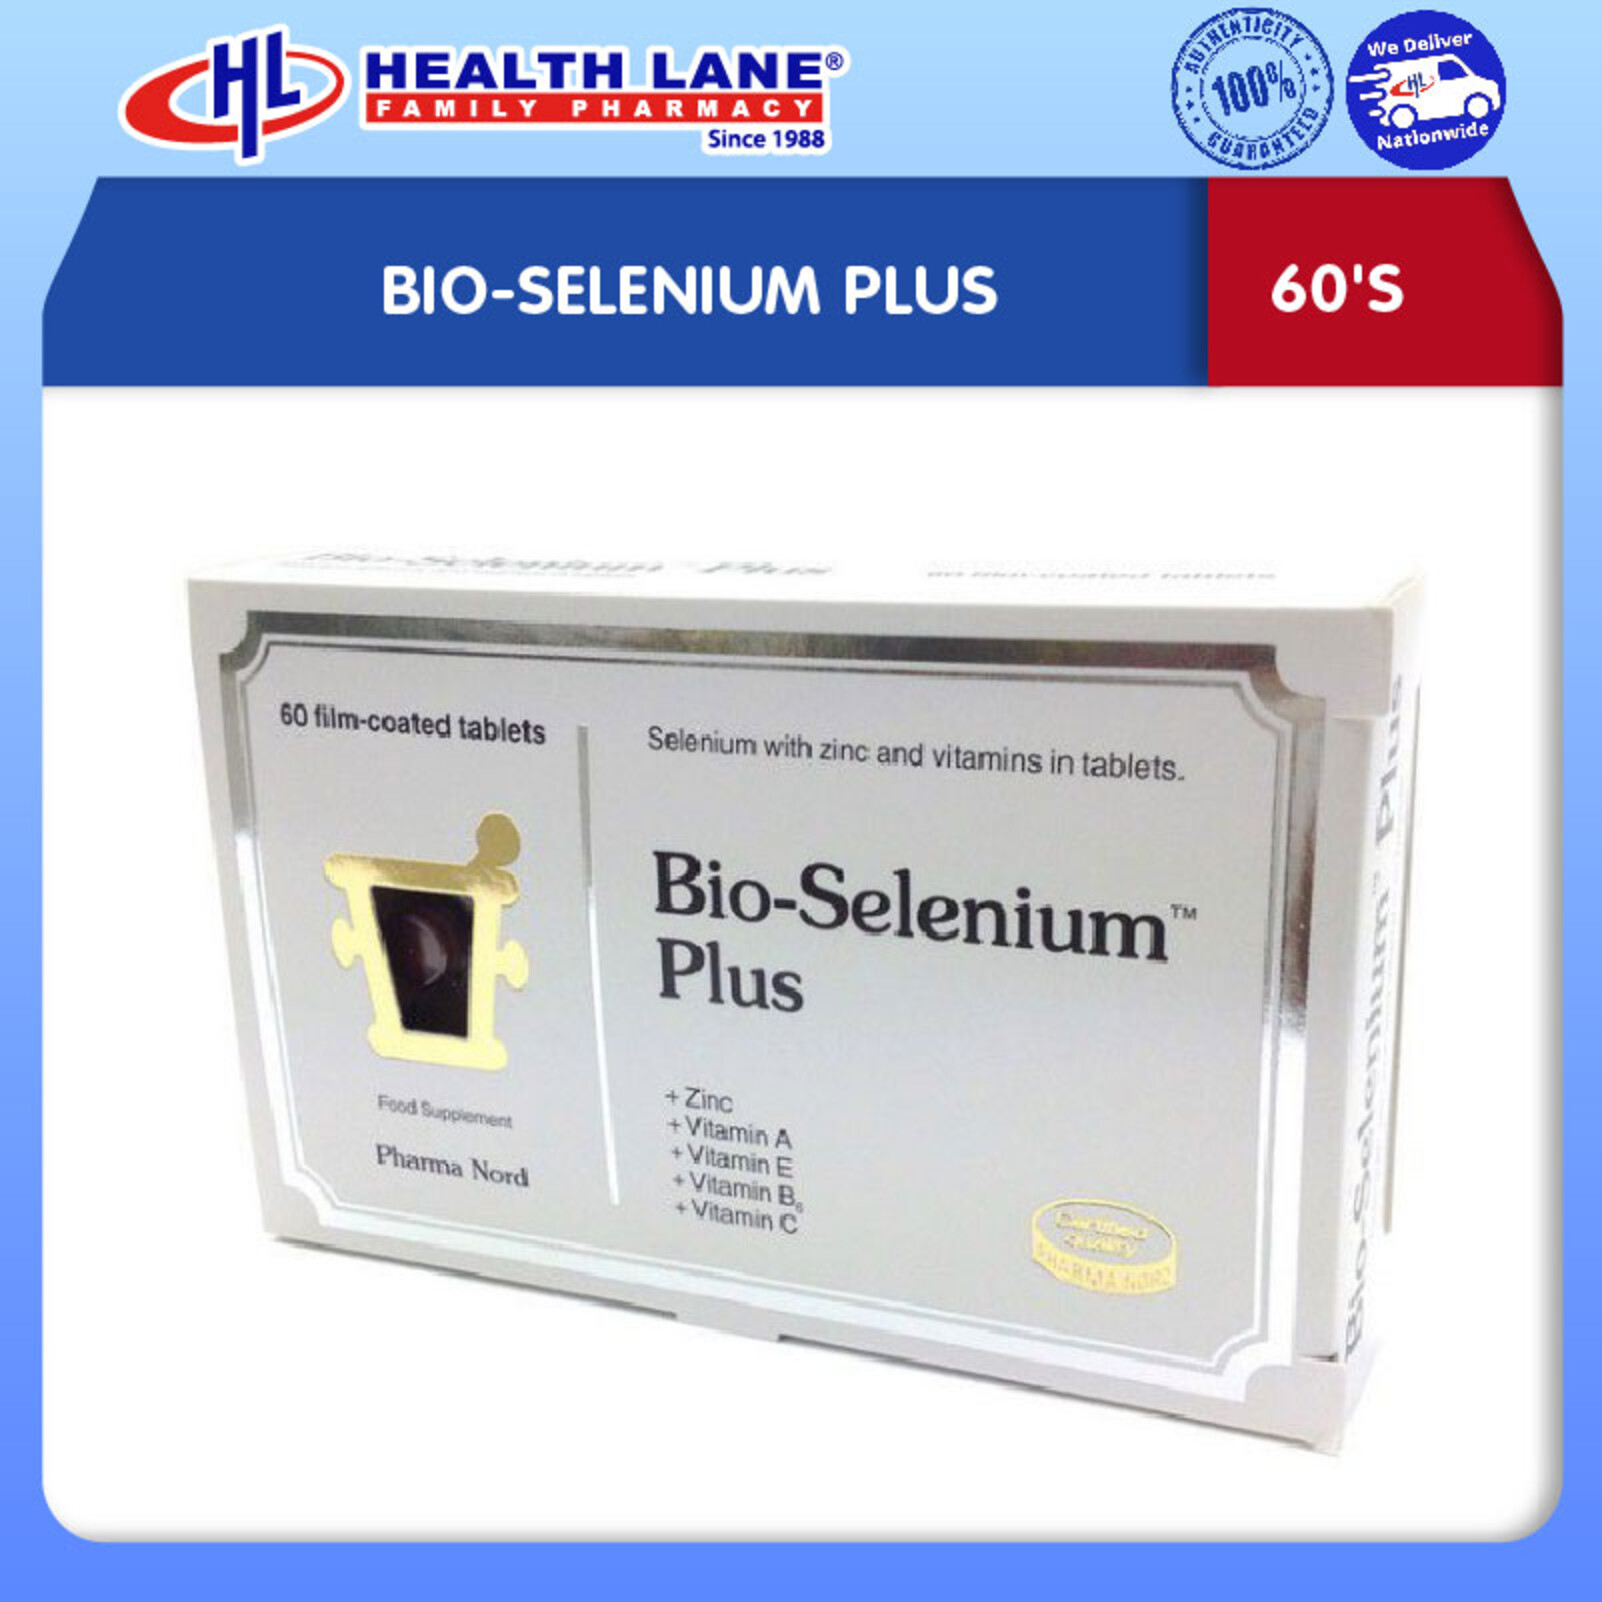 BIO-SELENIUM PLUS (60'S)